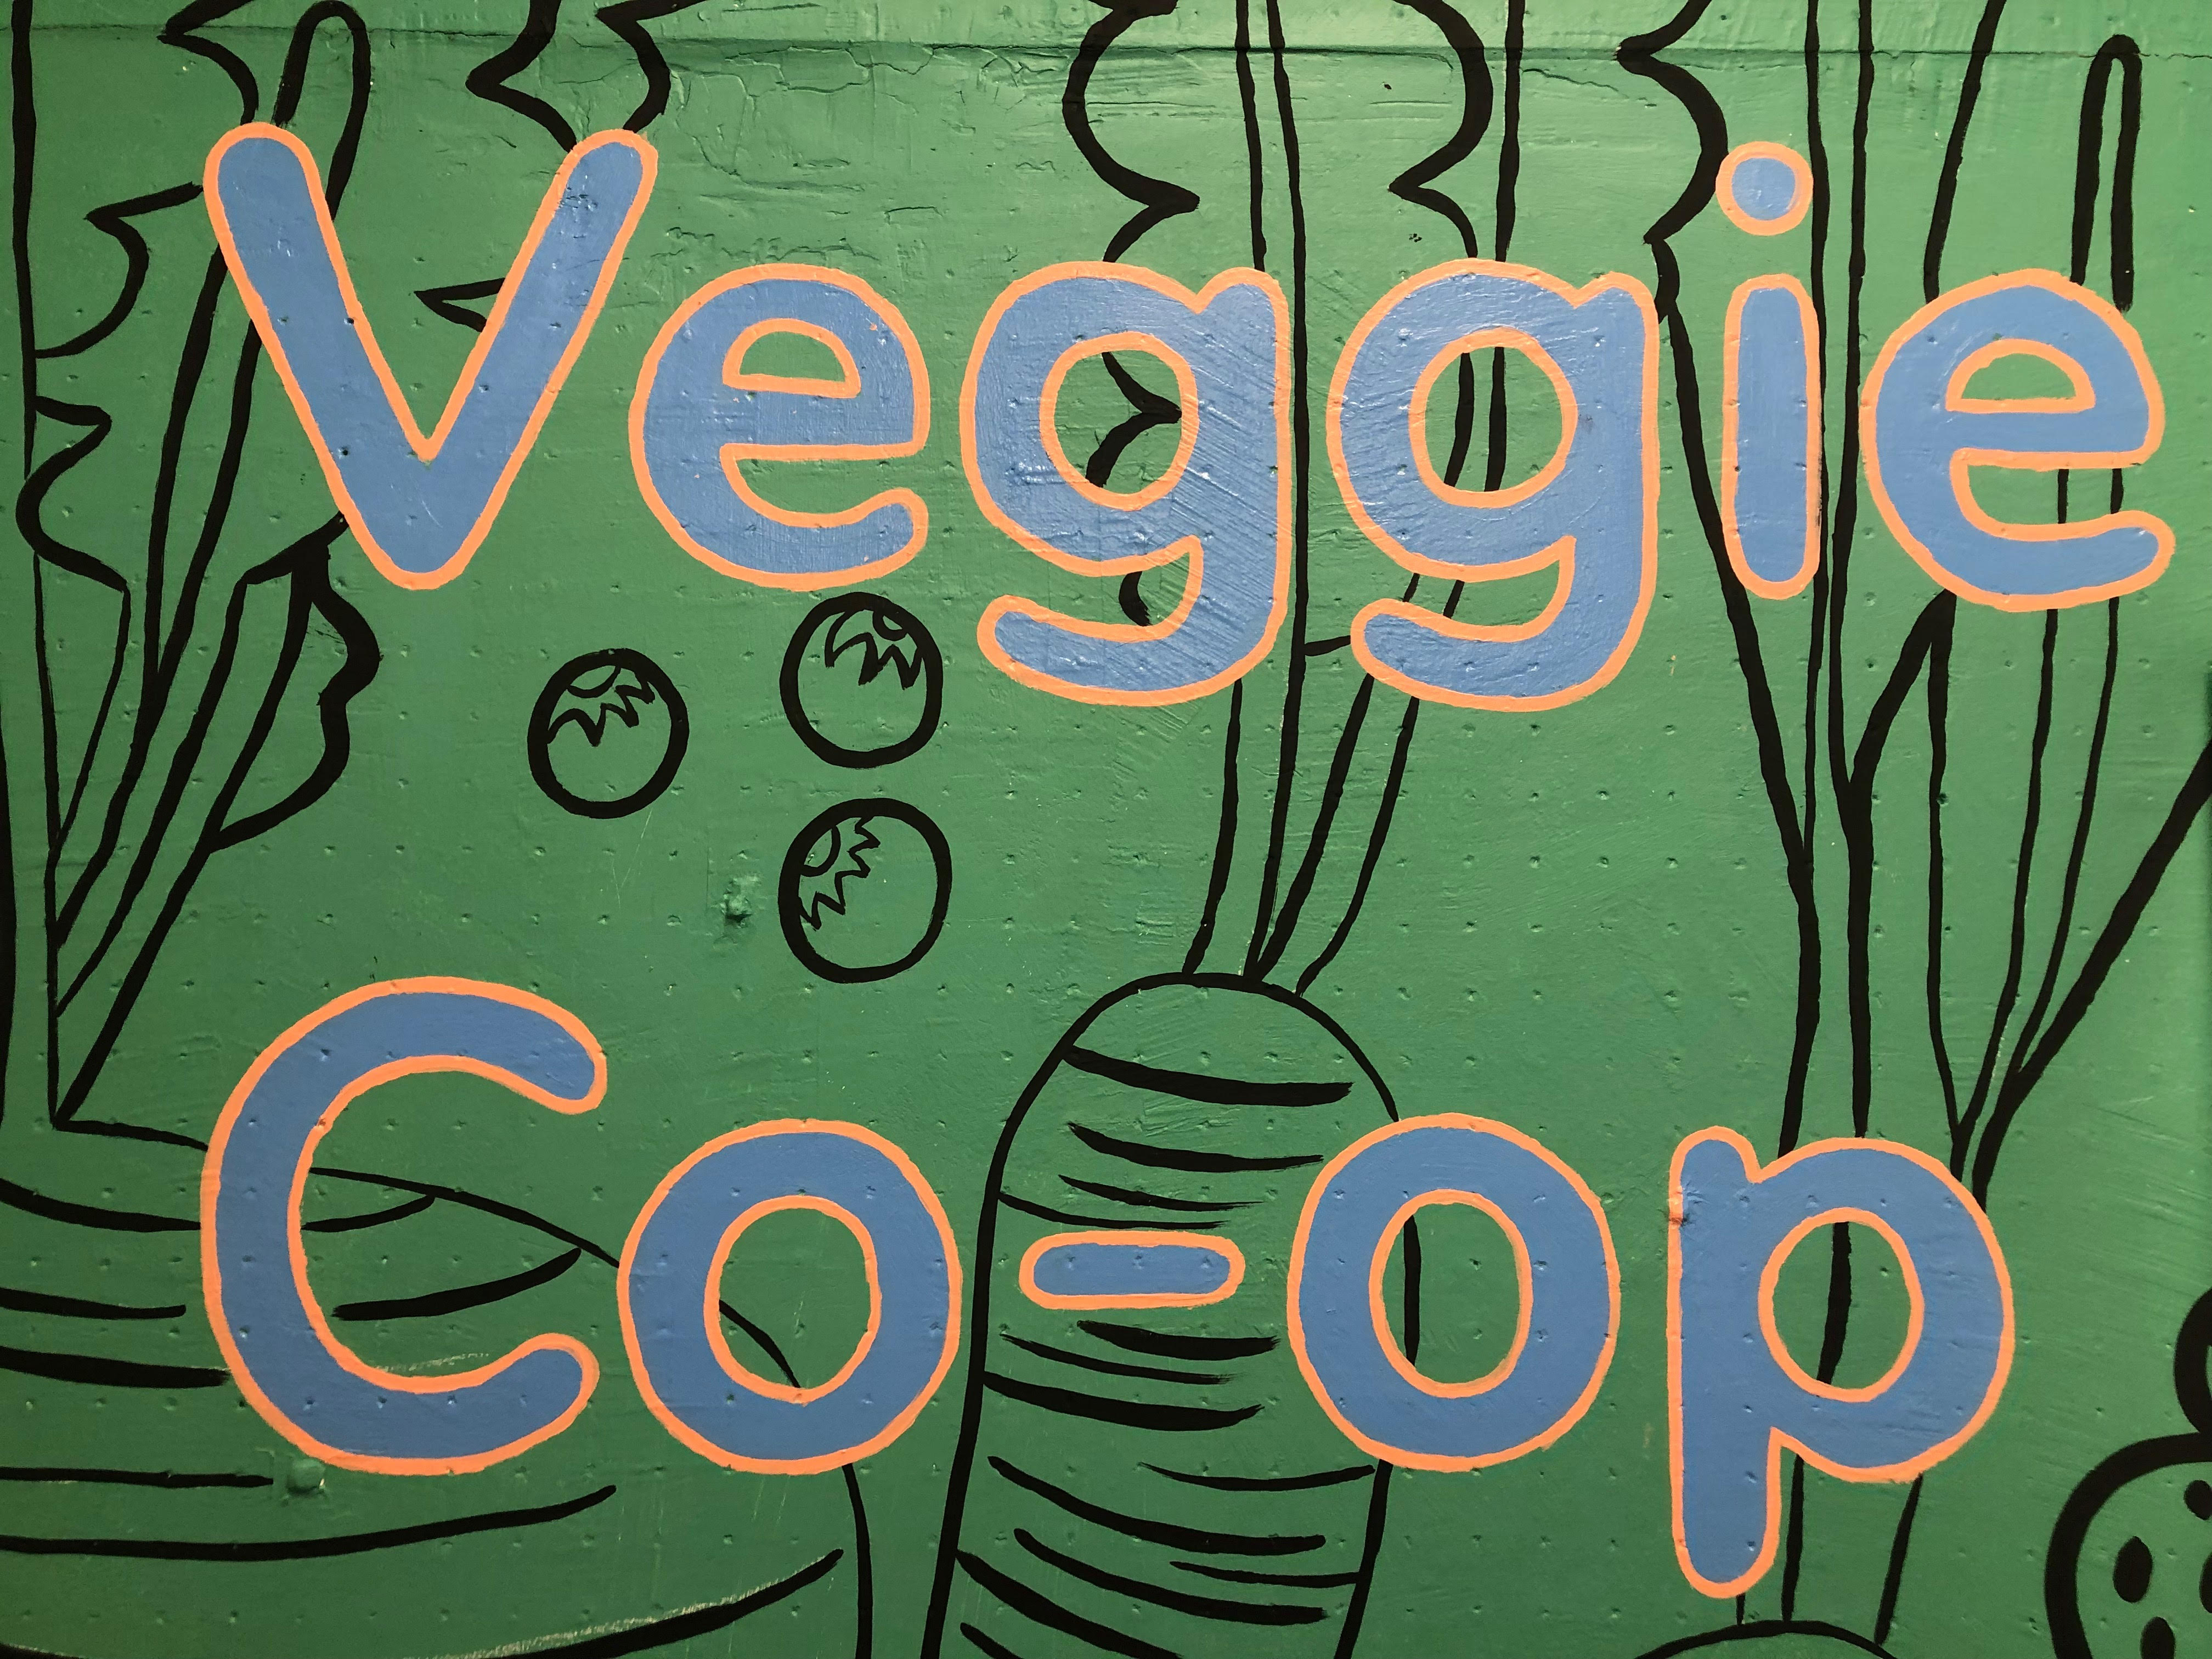 Veggie Co-op